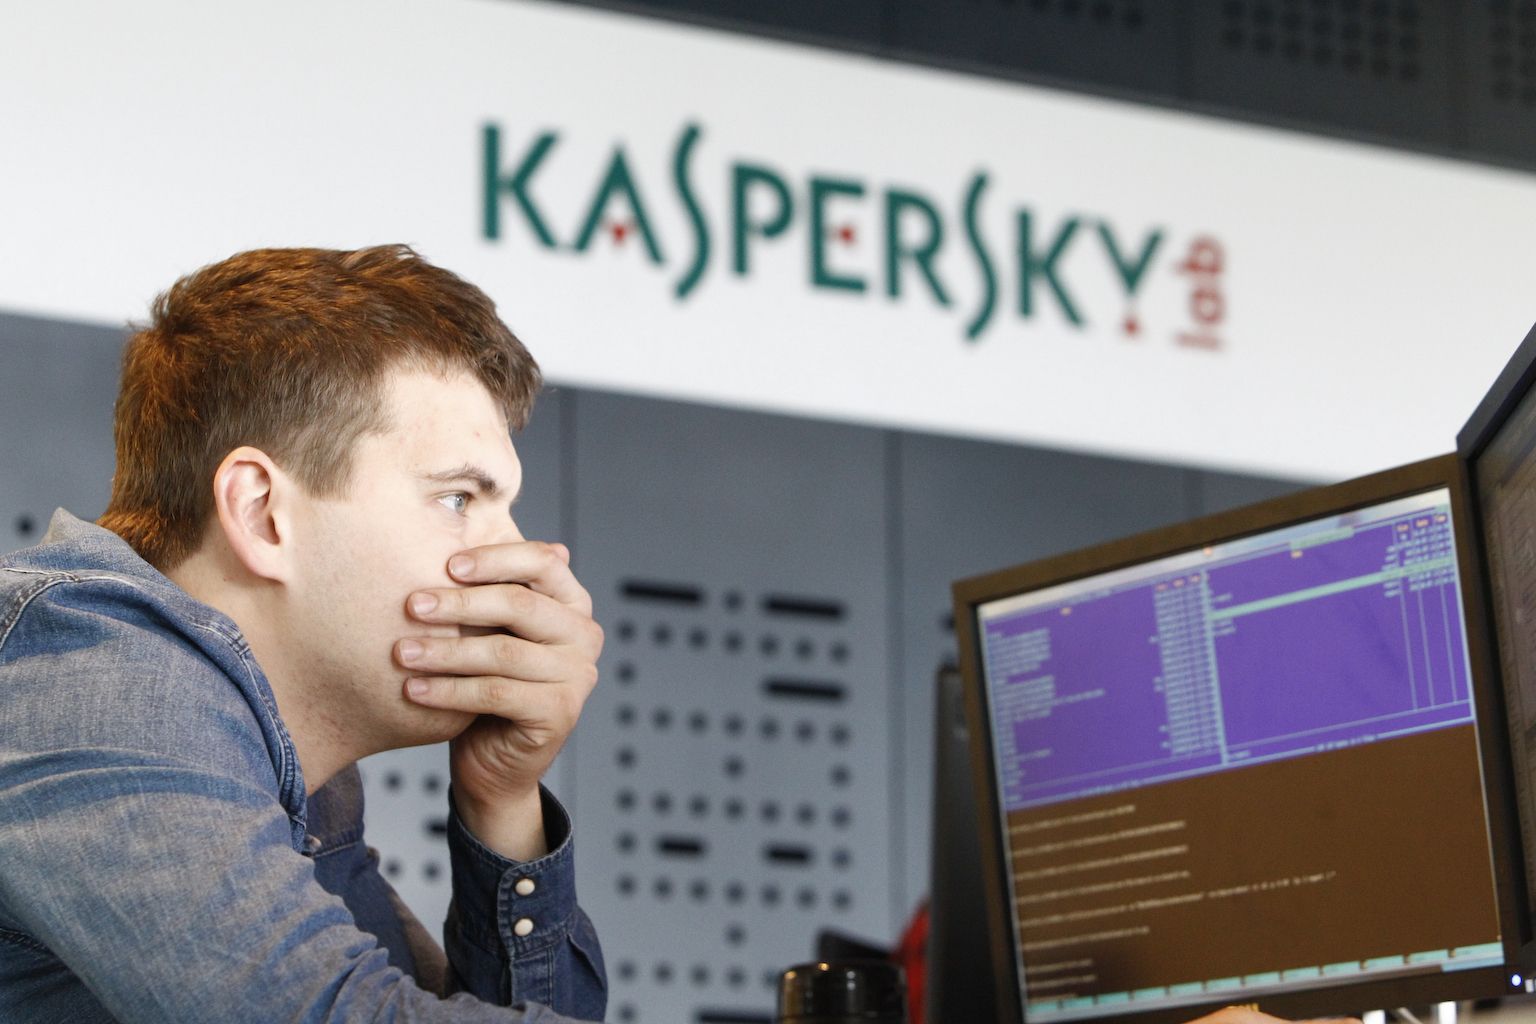 Kaspersky employee